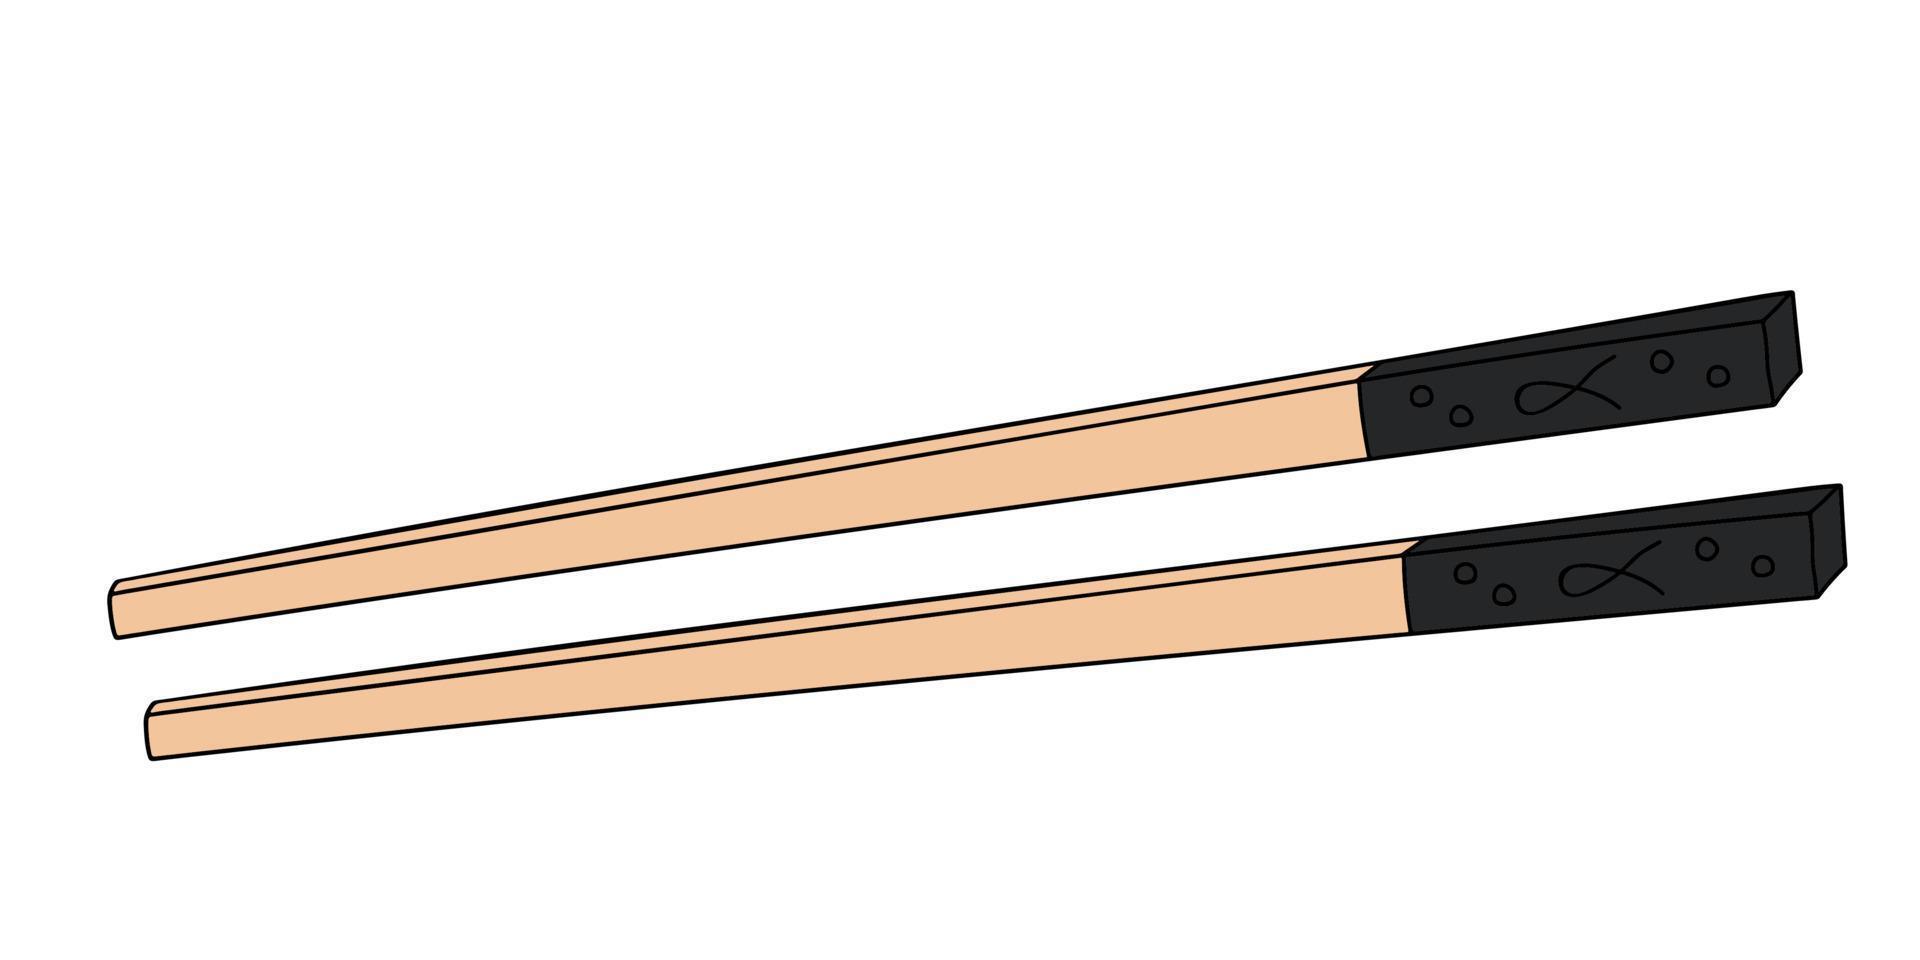 palillos de madera dibujados a mano para comer sushi, mariscos, comida japonesa y china vector